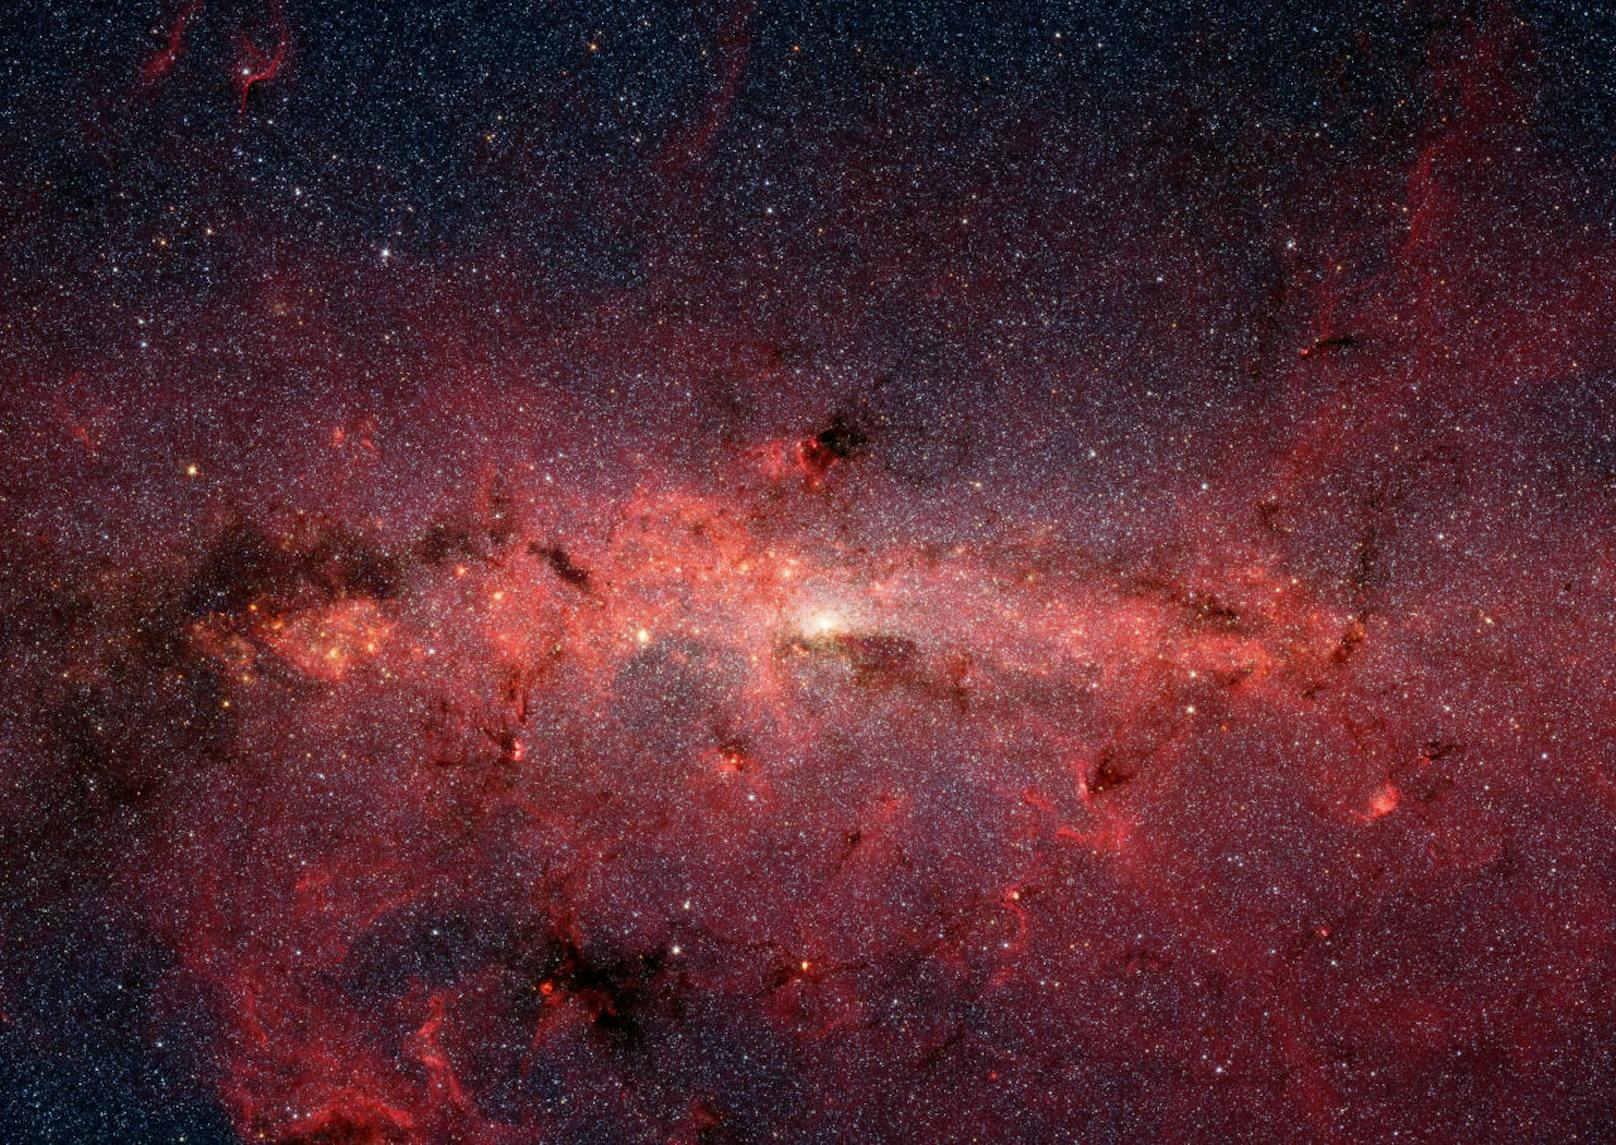 Infrarot-Aufnahme des Milchstraßen-Zentrums durch das Spitzer Weltraumteleskop.
NASA/JPL-Caltech/S. Stolvoy